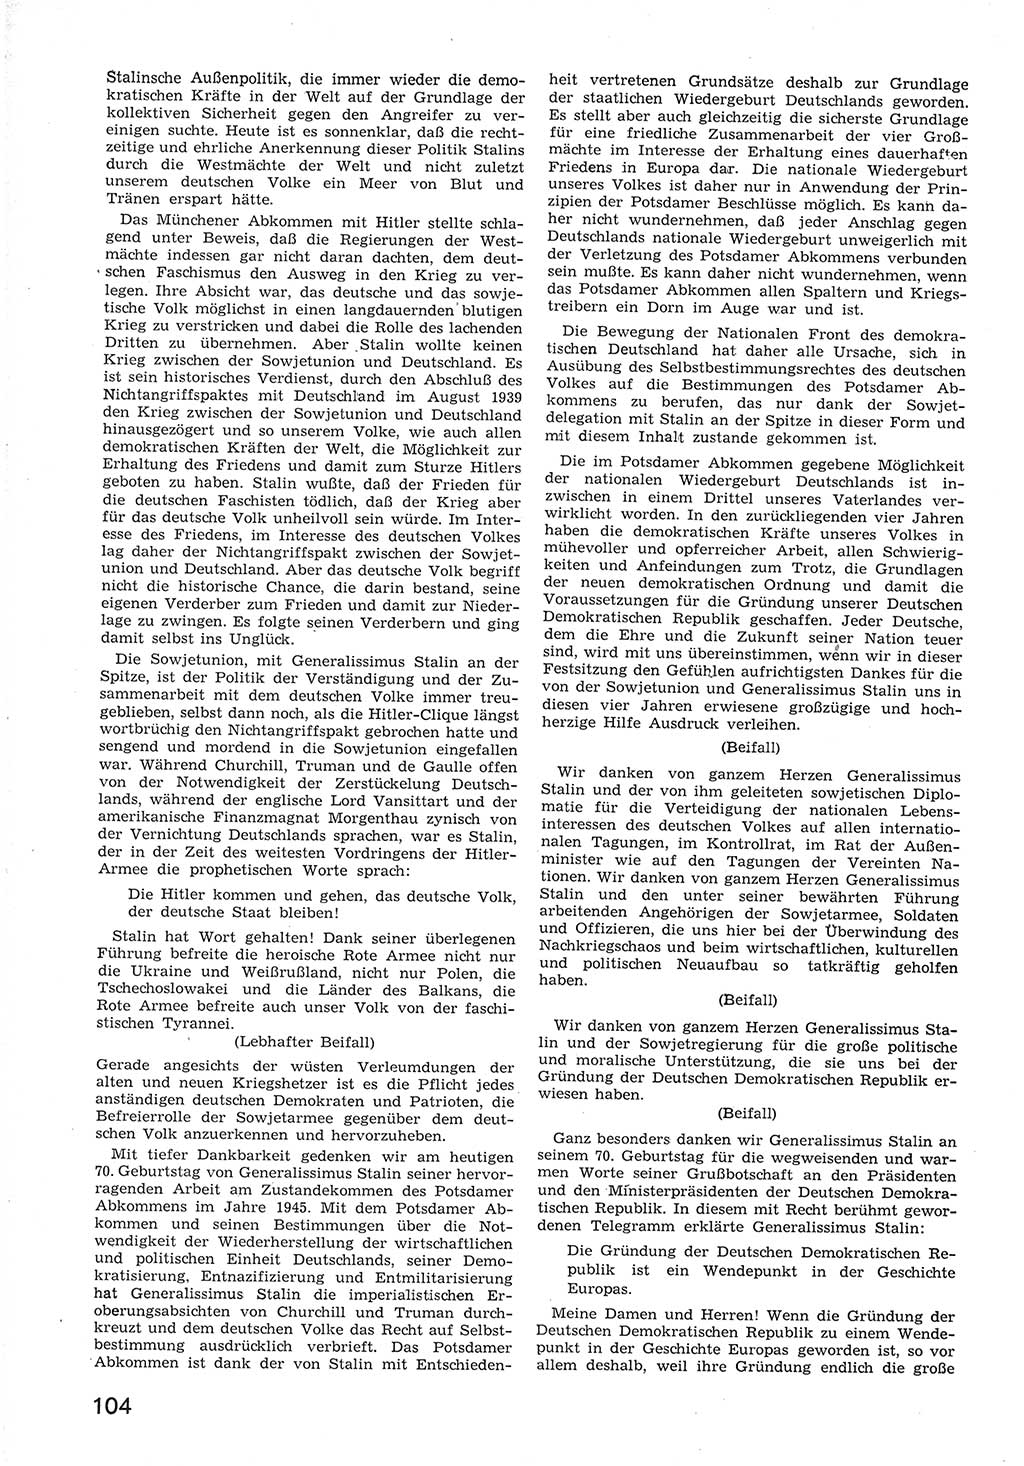 Provisorische Volkskammer (VK) der Deutschen Demokratischen Republik (DDR) 1949-1950, Dokument 116 (Prov. VK DDR 1949-1950, Dok. 116)